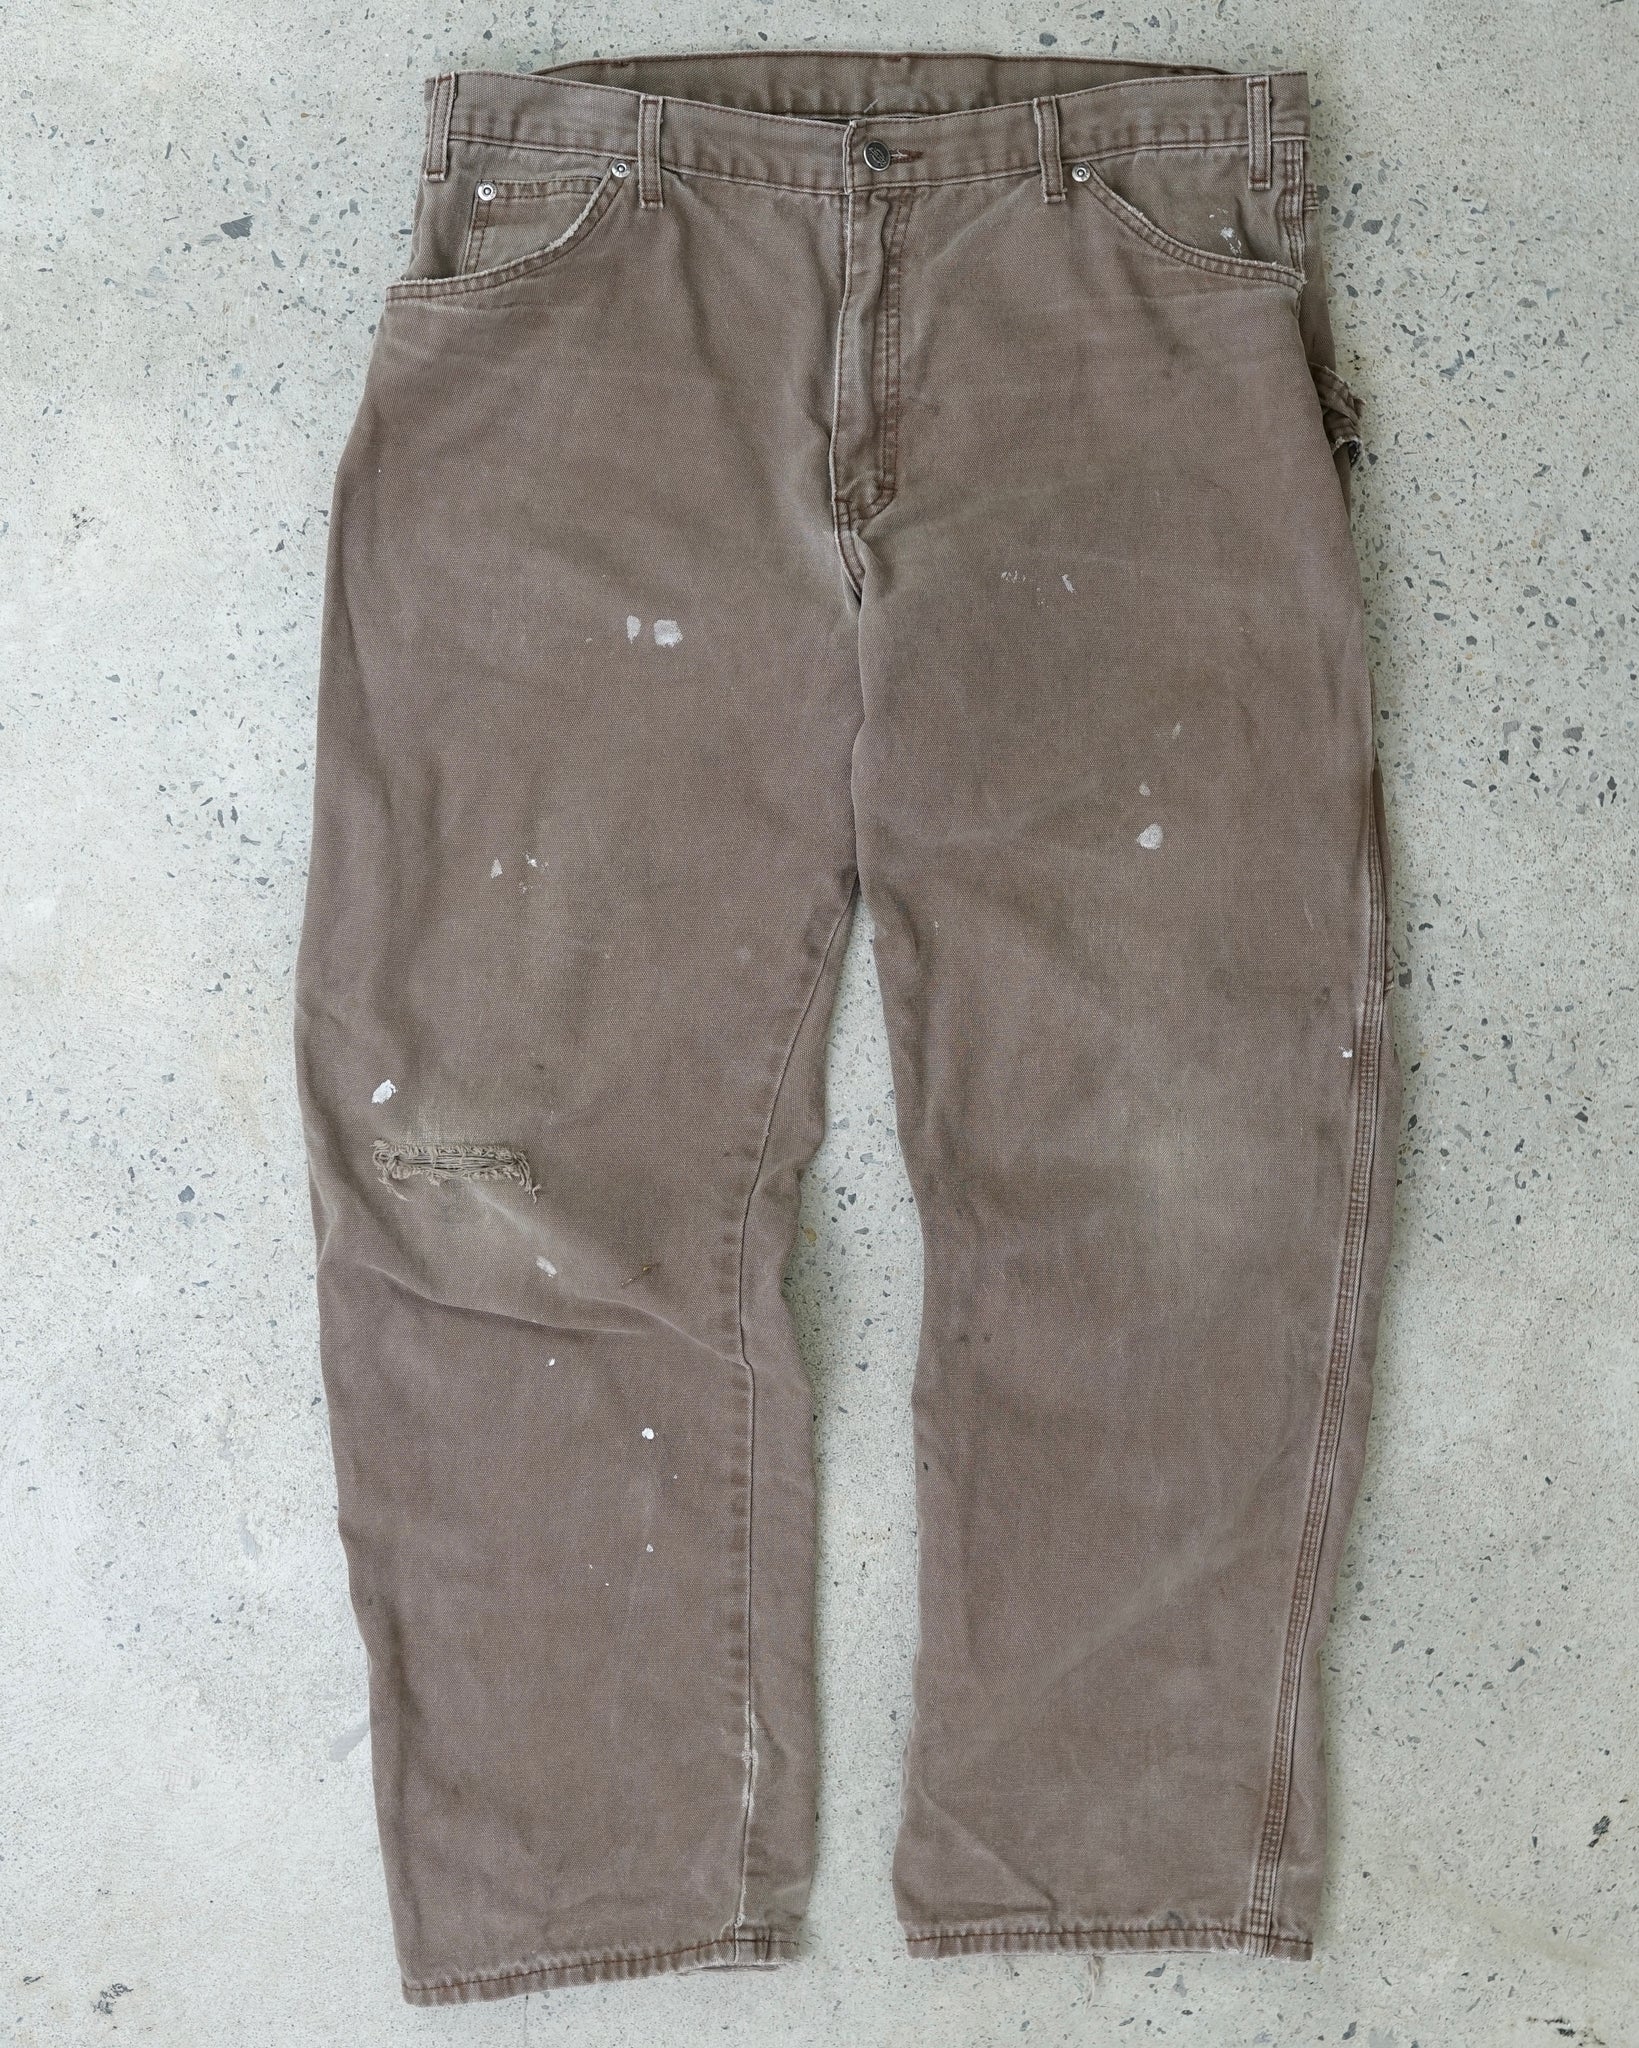 dickies carpenter pants - 38x32